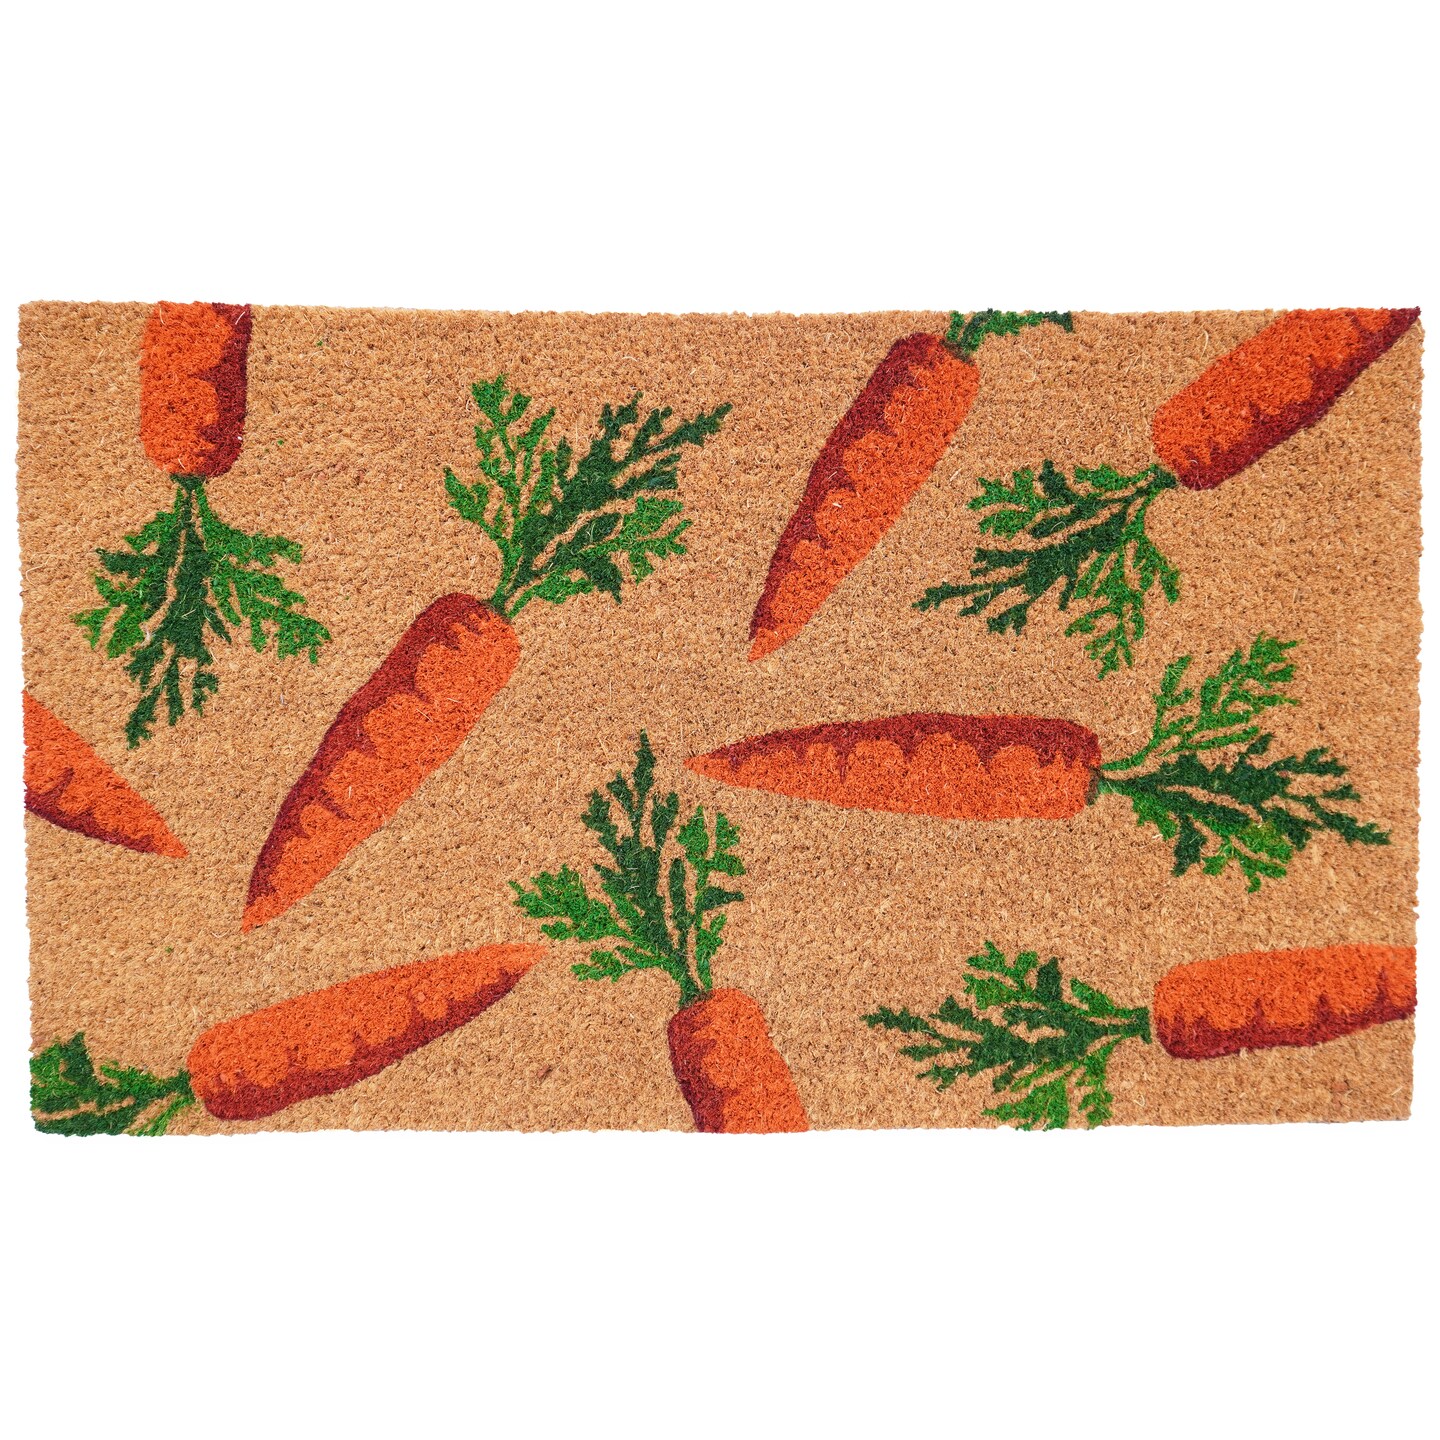 106661729 Carrot Patch Doormat